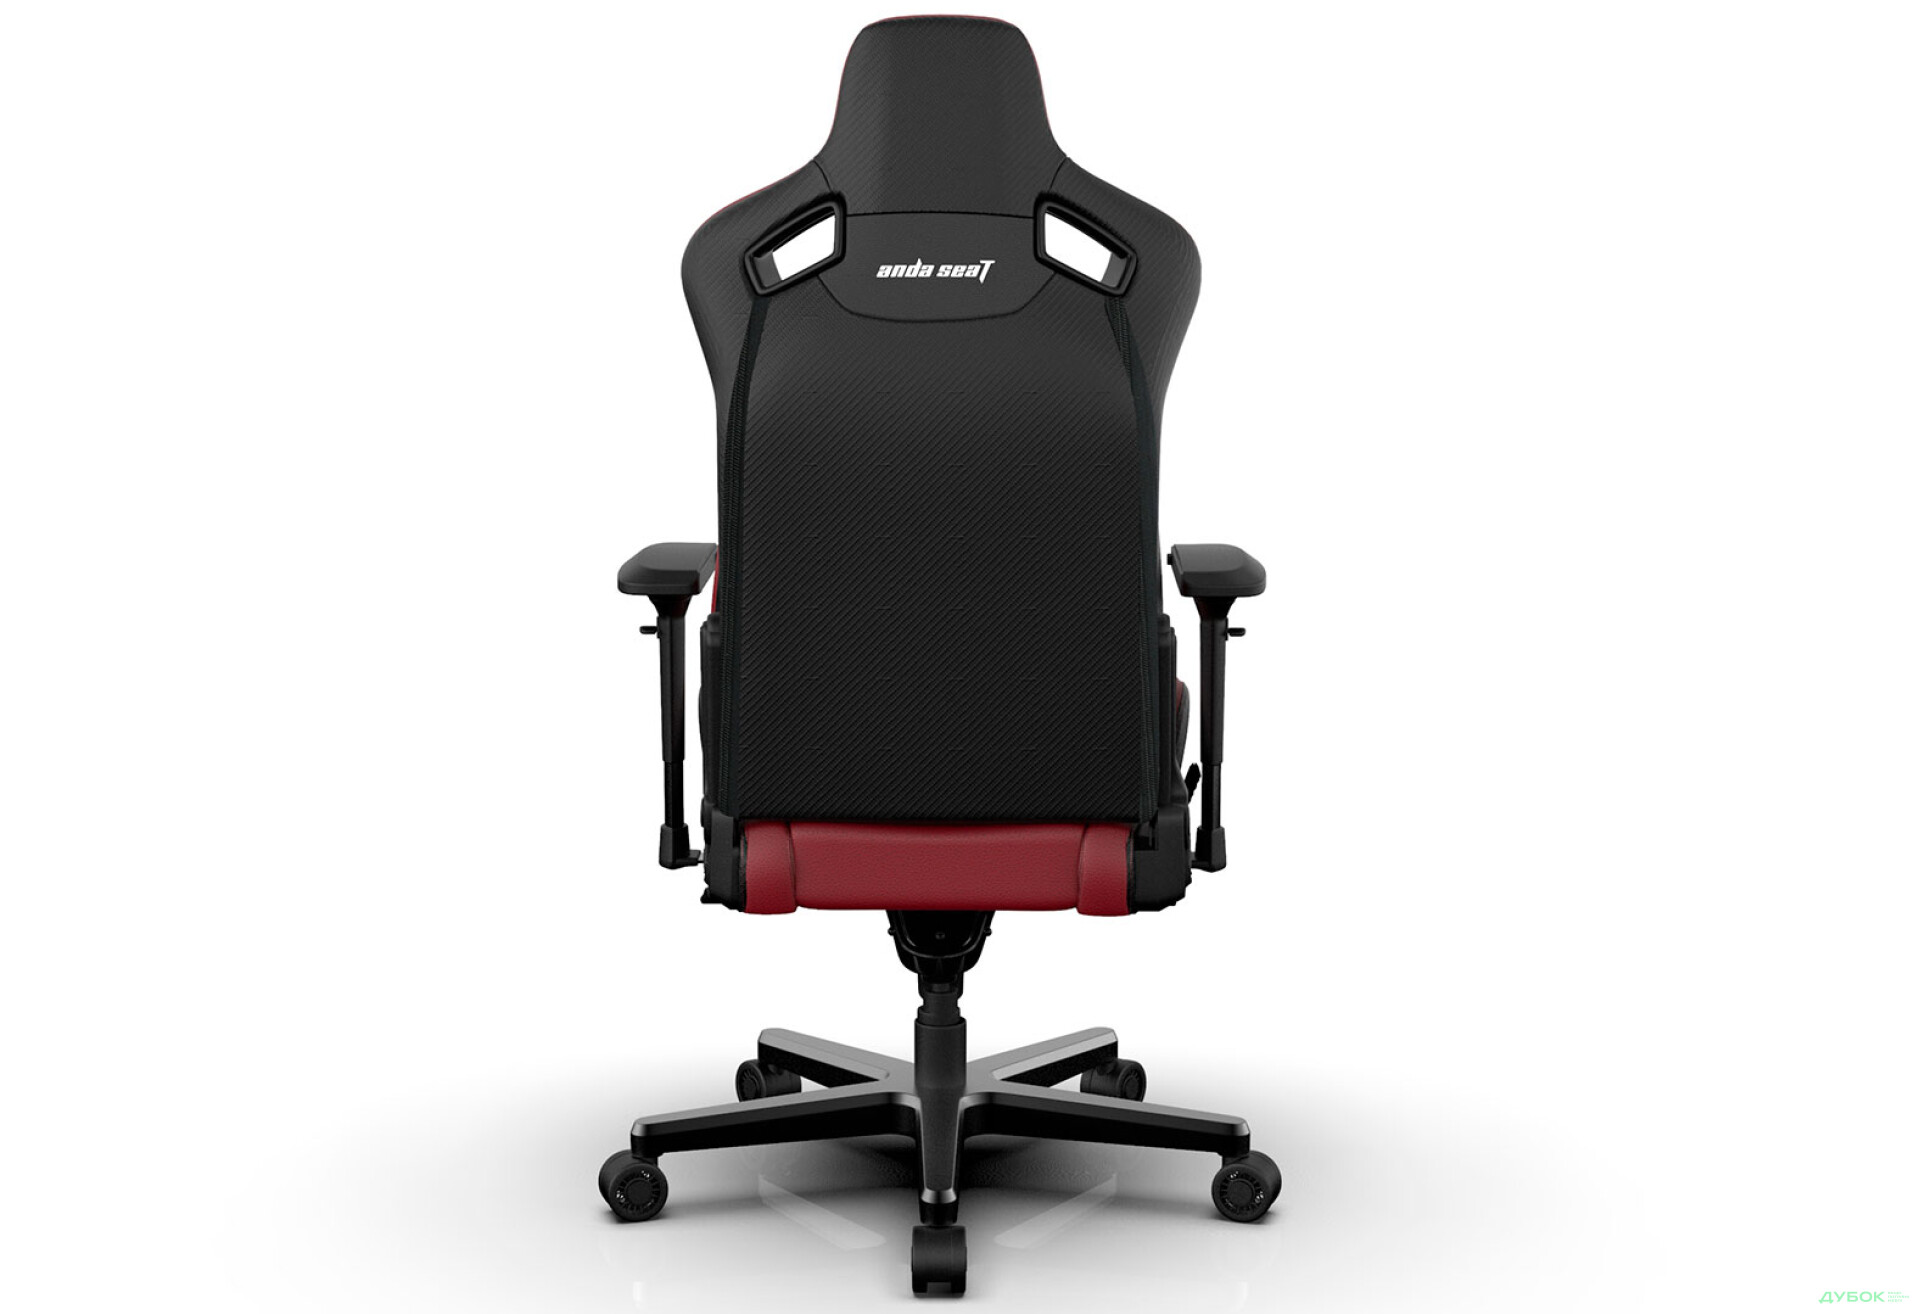 Фото 5 - Компьютерное кресло Anda Seat Kaiser 2 61x57x143 см игровое, черно-бордовое